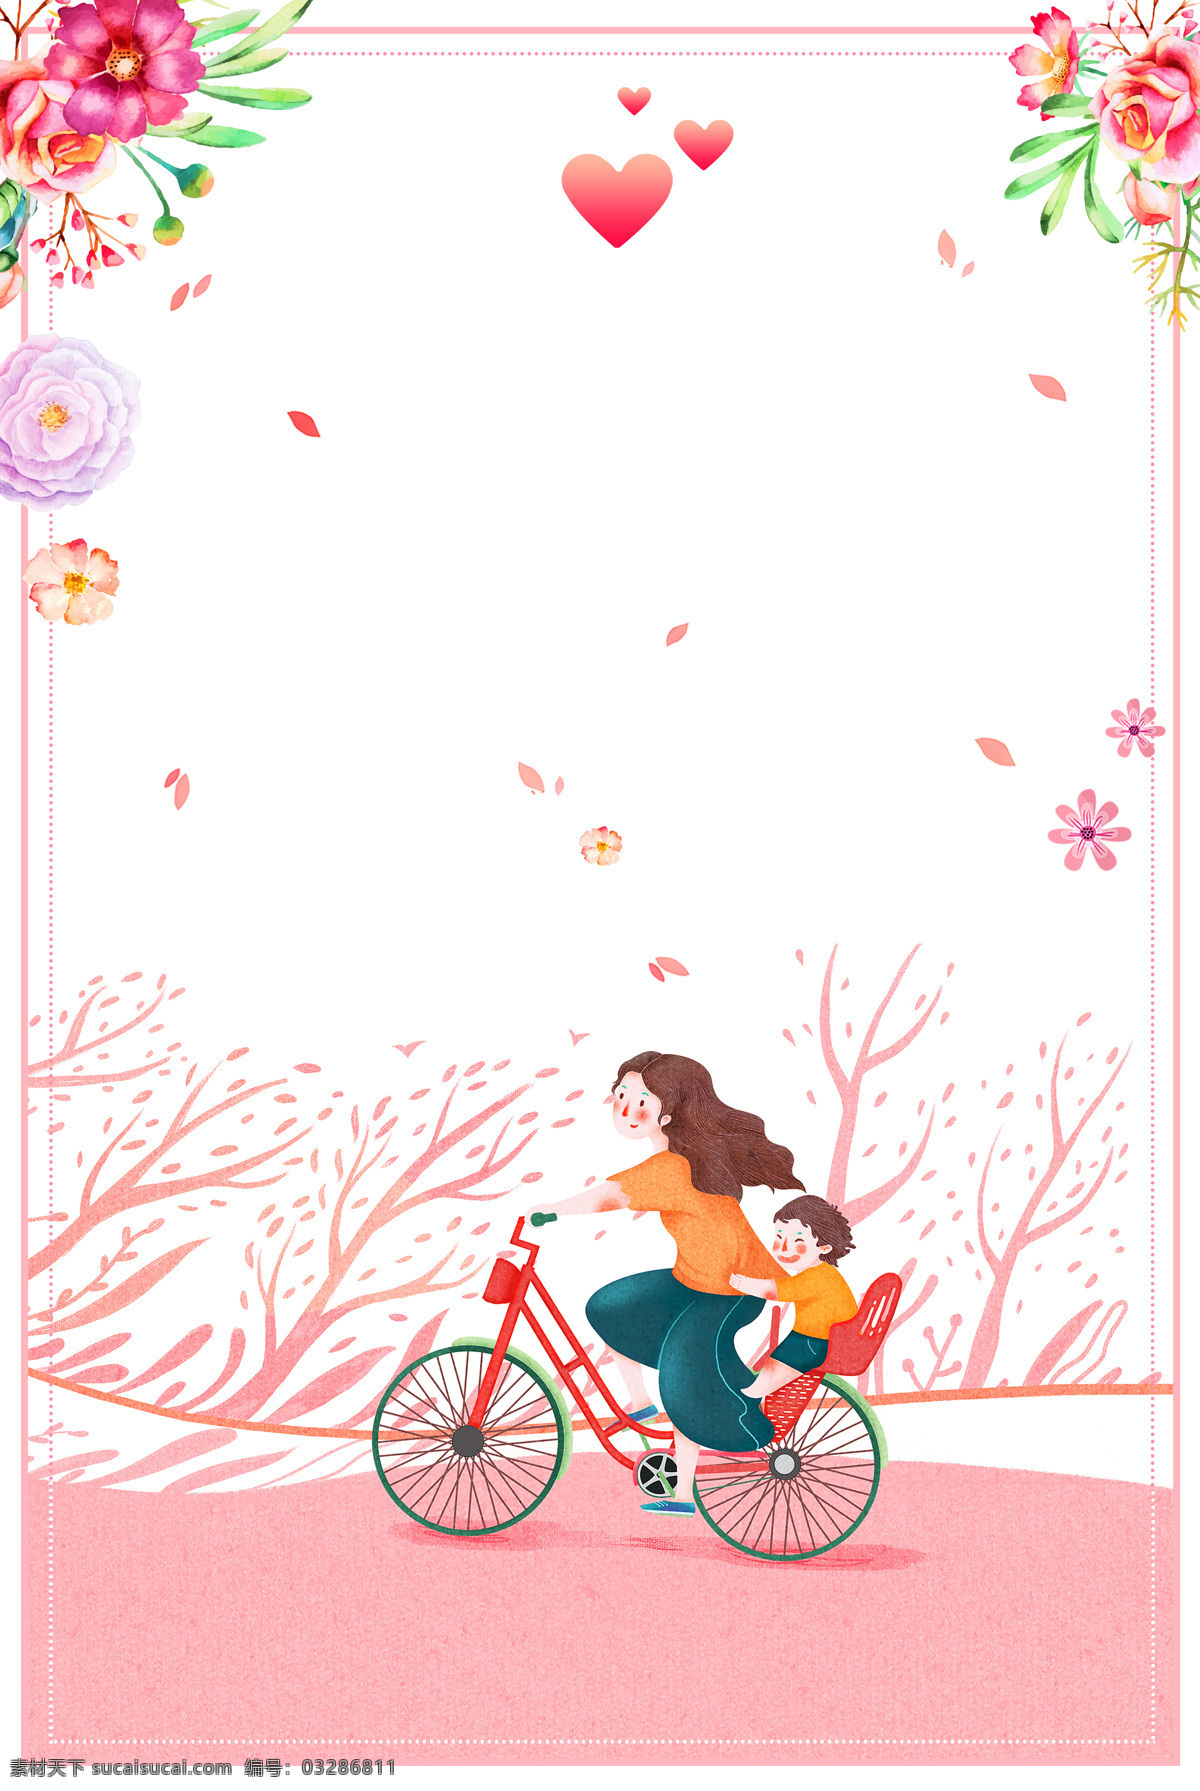 浪漫 母子 亲情 背景 花朵 边框 心形 线条 树林 母子单车 海报 广告